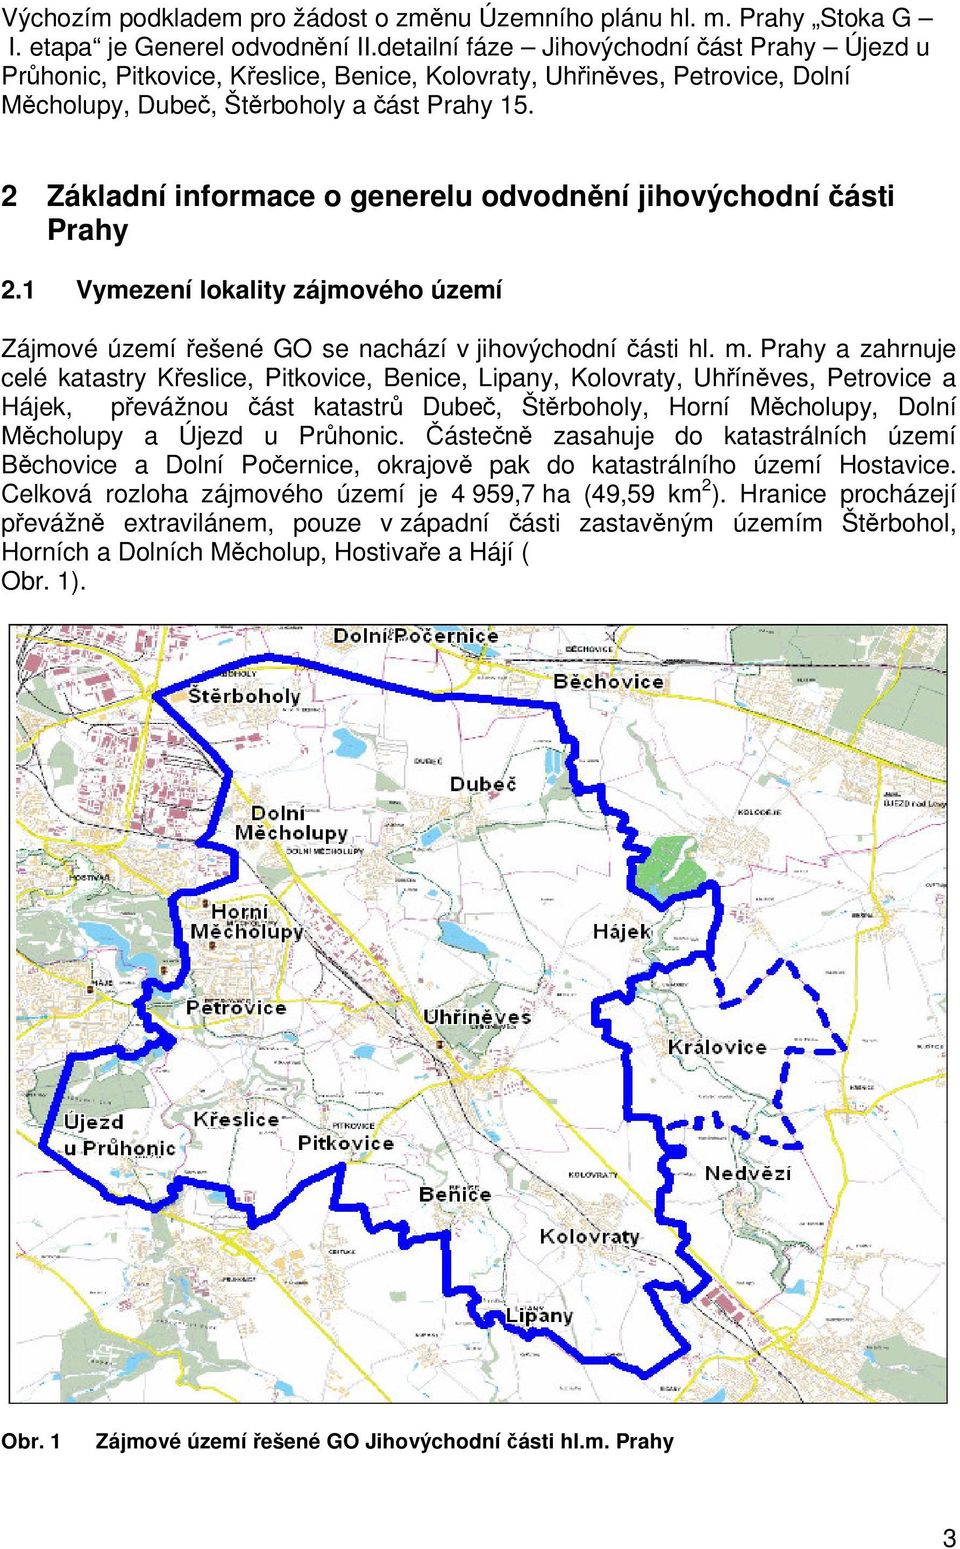 2 Základní informace o generelu odvodnění jihovýchodní části Prahy 2.1 Vymezení lokality zájmového území Zájmové území řešené GO se nachází v jihovýchodní části hl. m.